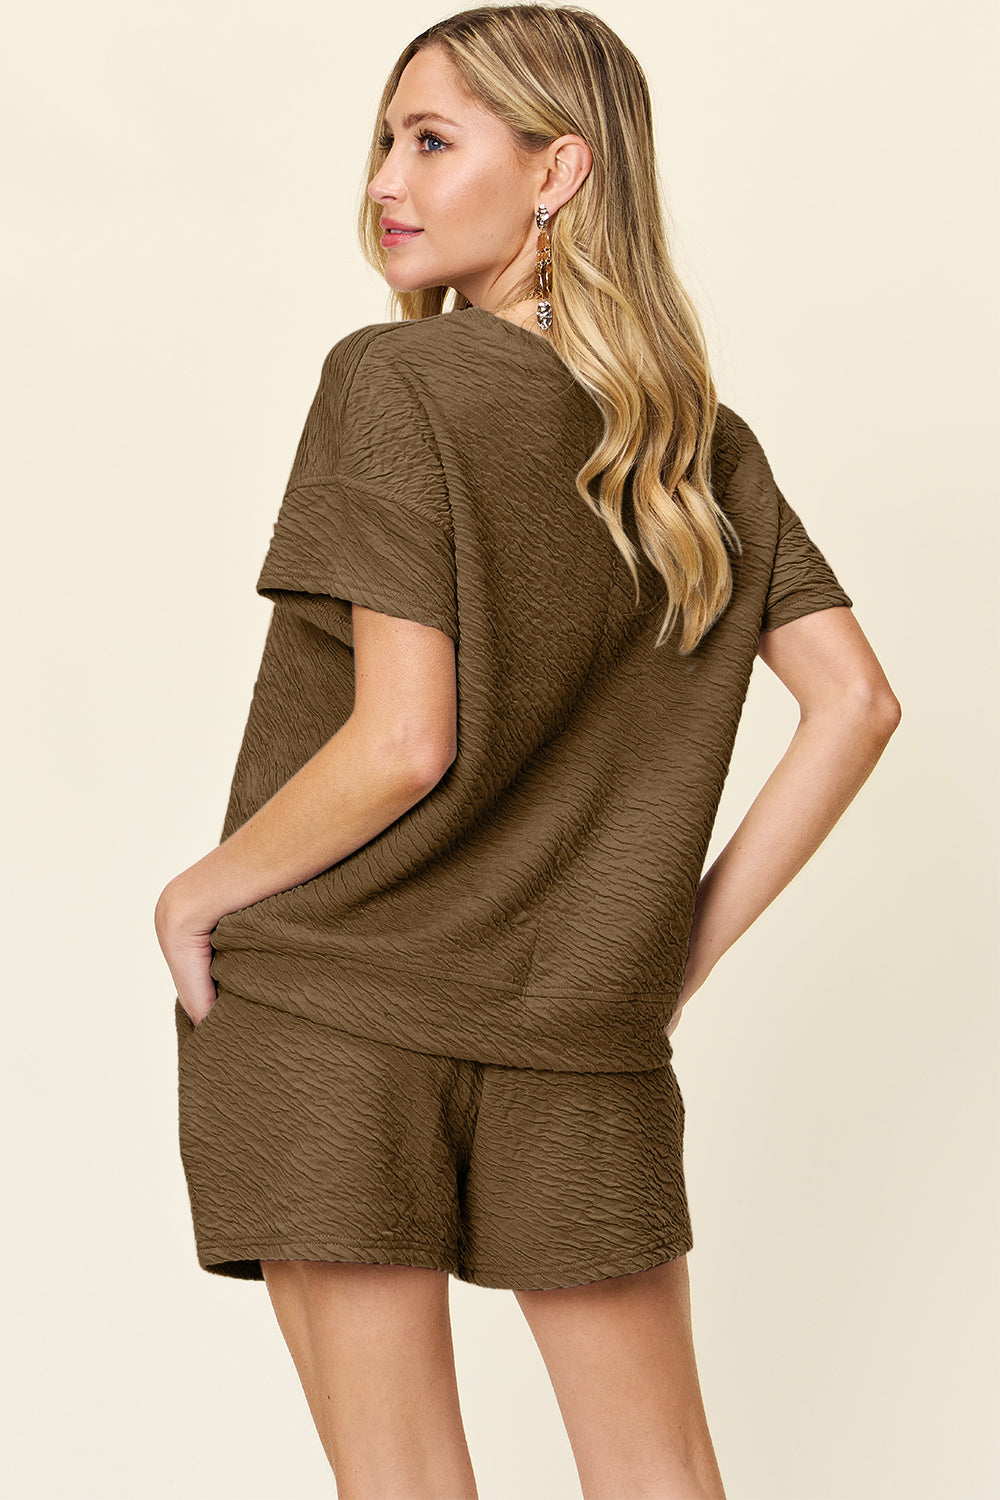 Texture Short Sleeve T-Shirt and Drawstring Shorts Set - 5 colors